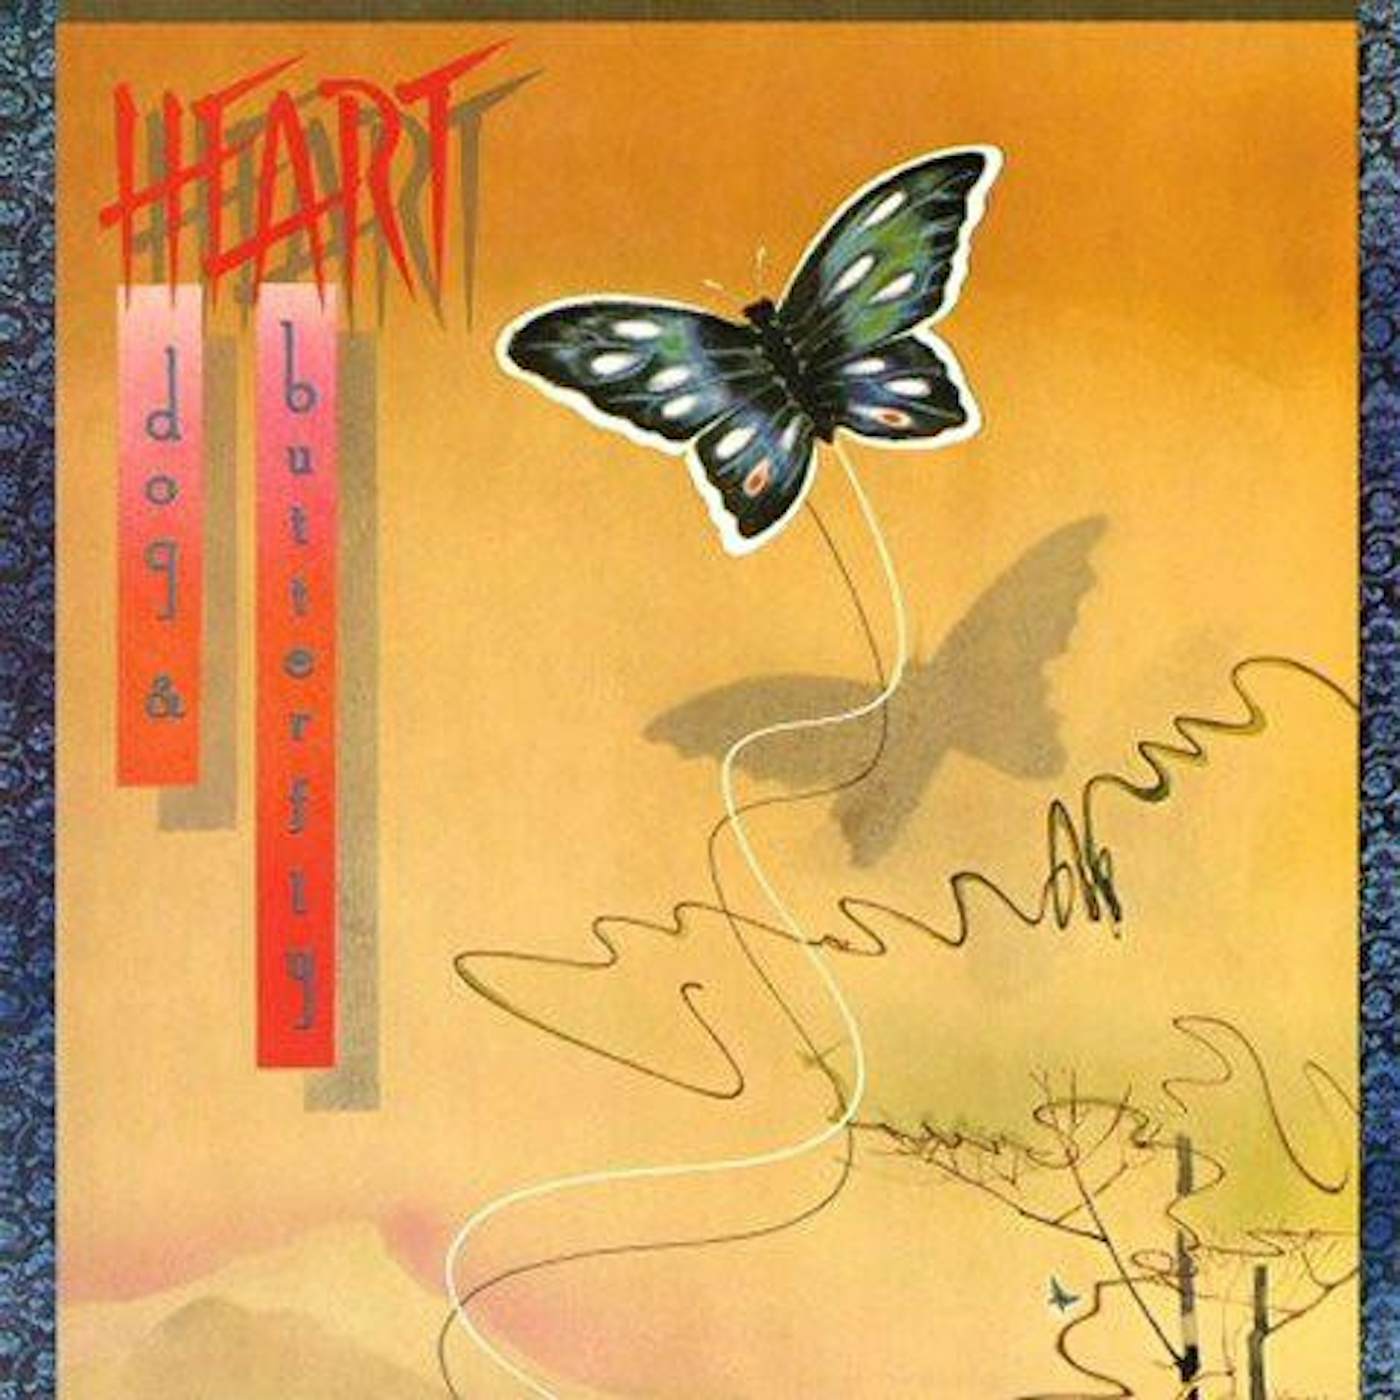 Heart DOG & BUTTERFLY + 3  (24BIT REMASTER) CD